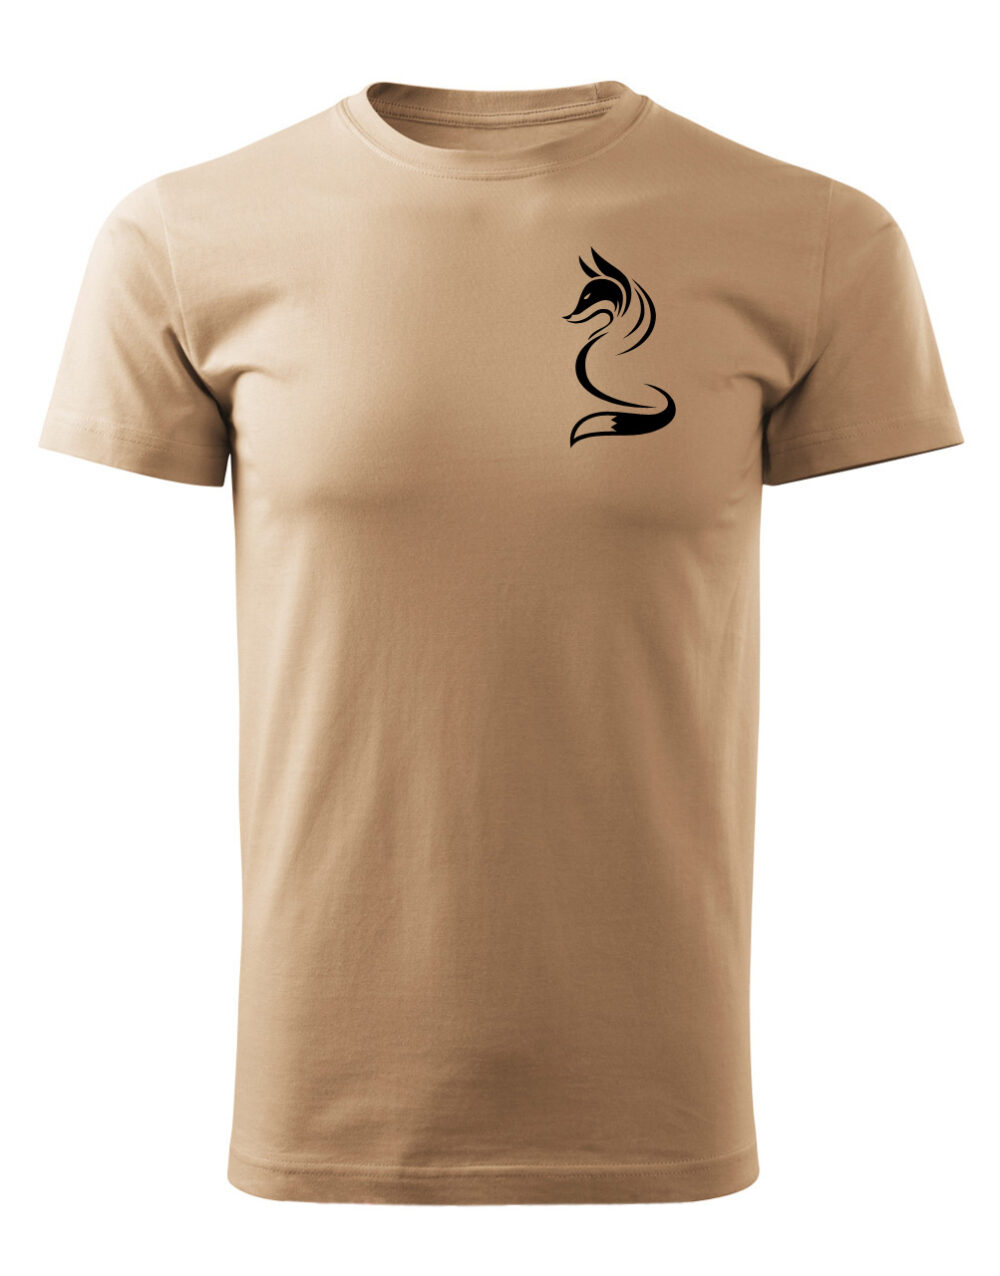 Pánské tričko s potiskem Liška písková